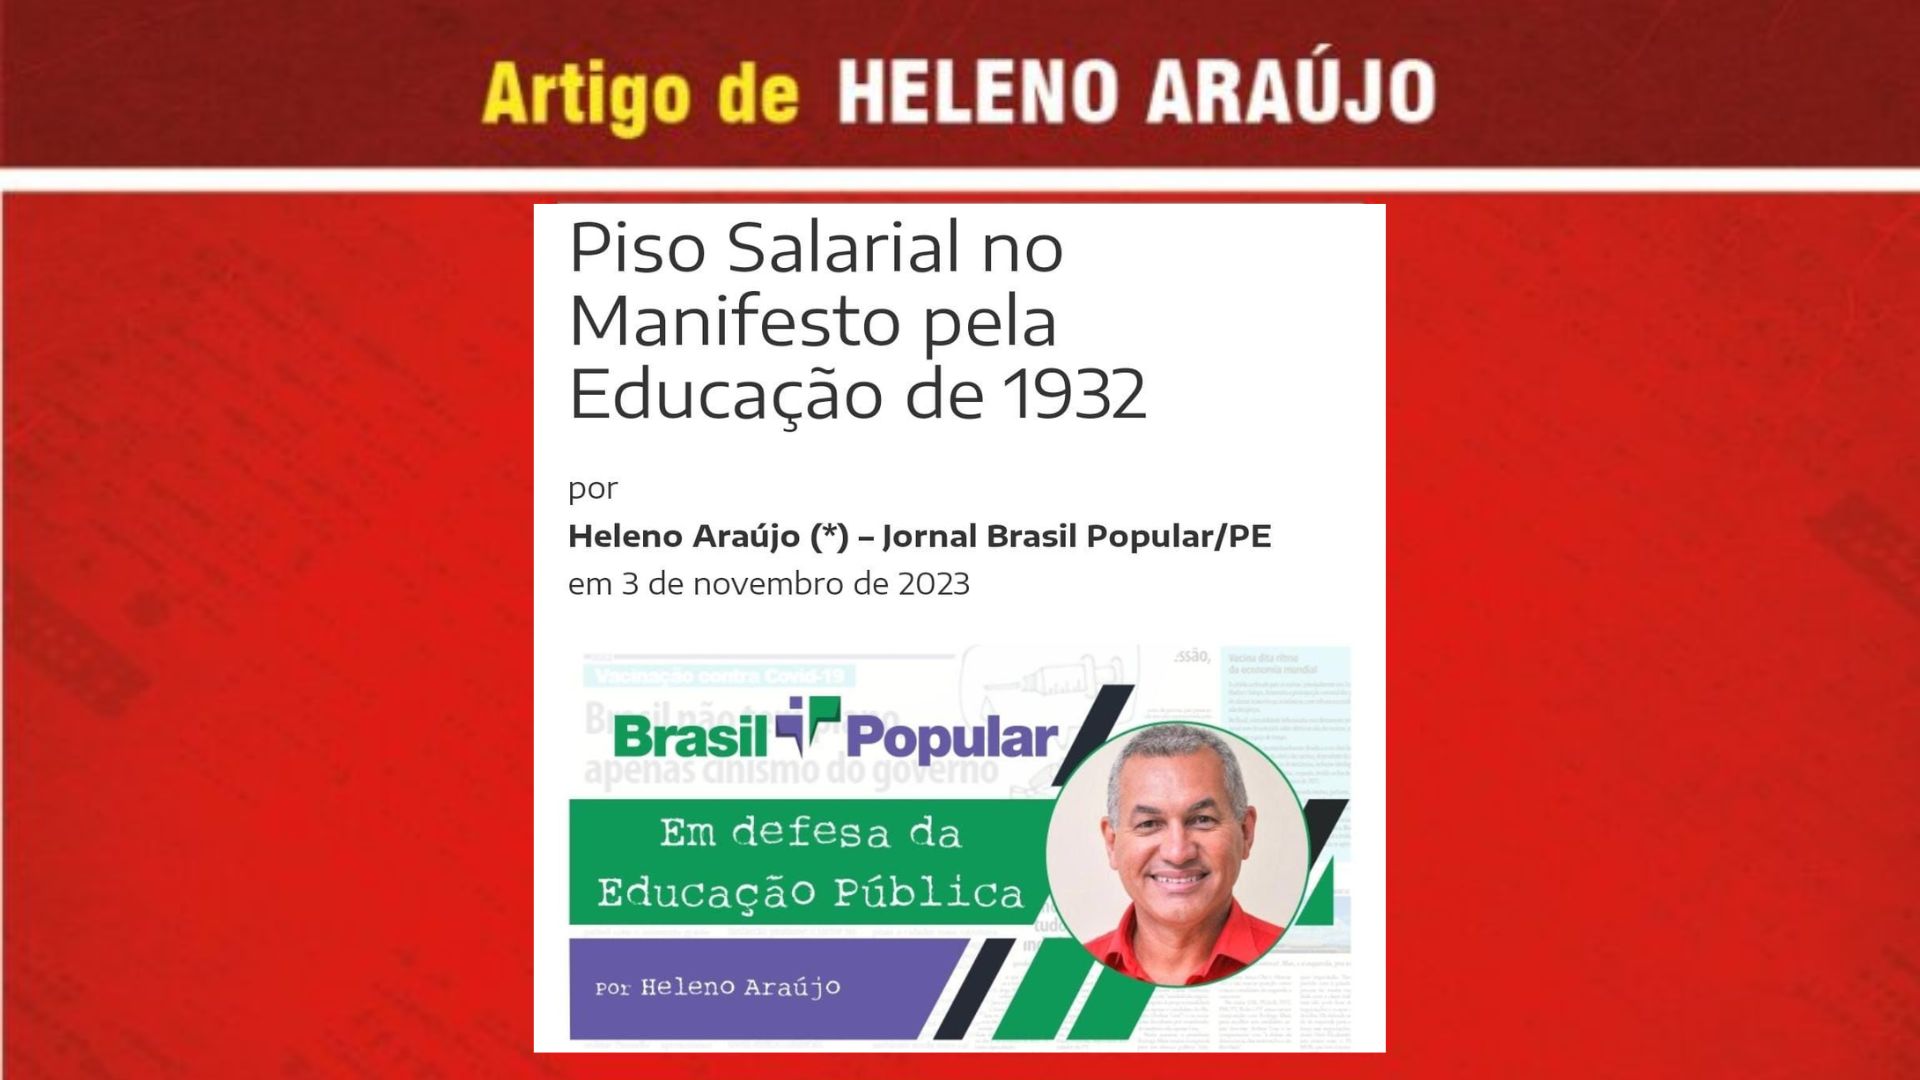 A mulher e a educação pública no Brasil Império